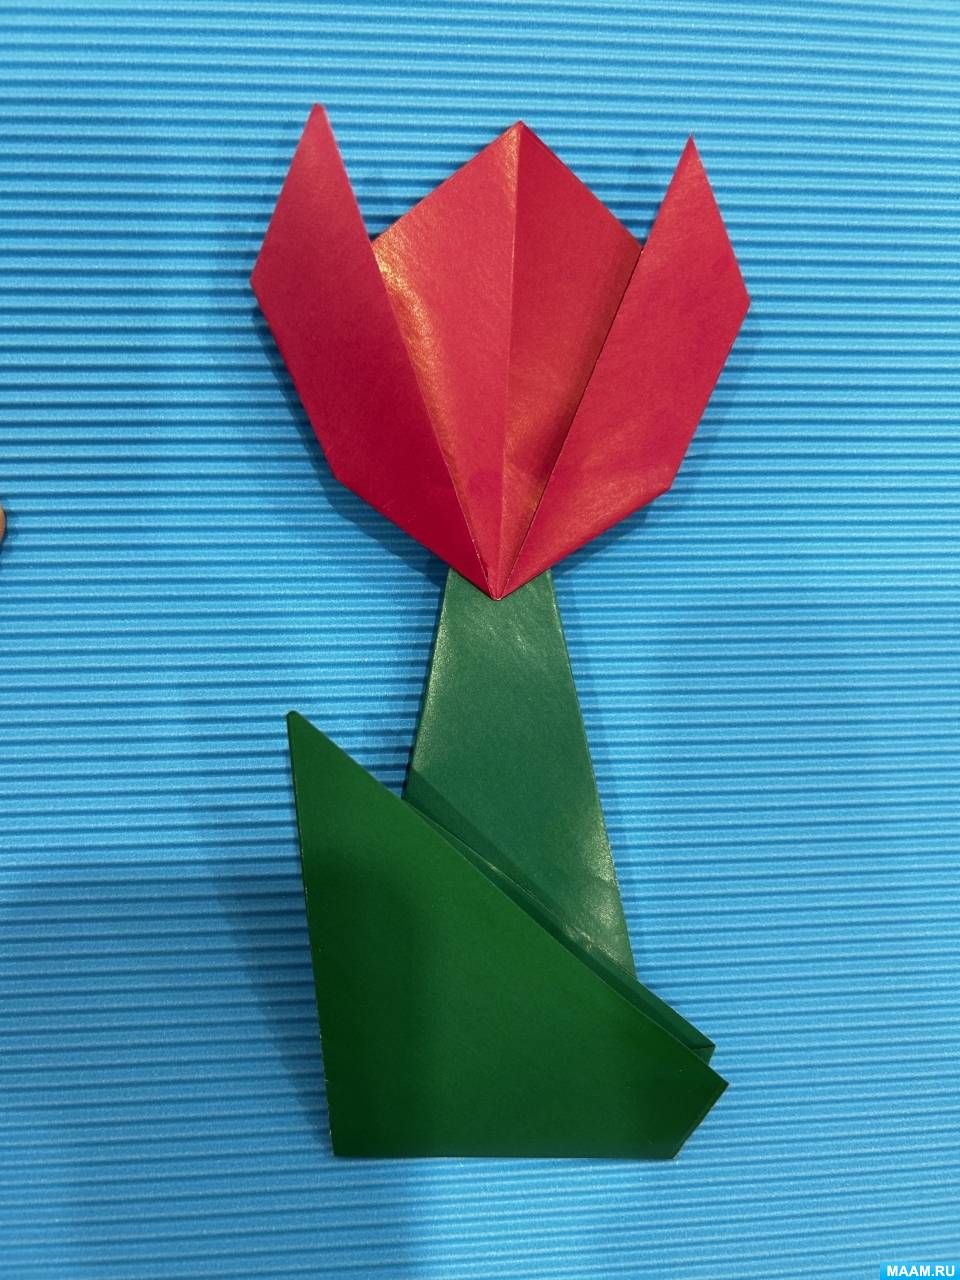 Оригами для детей 3 – 4 лет